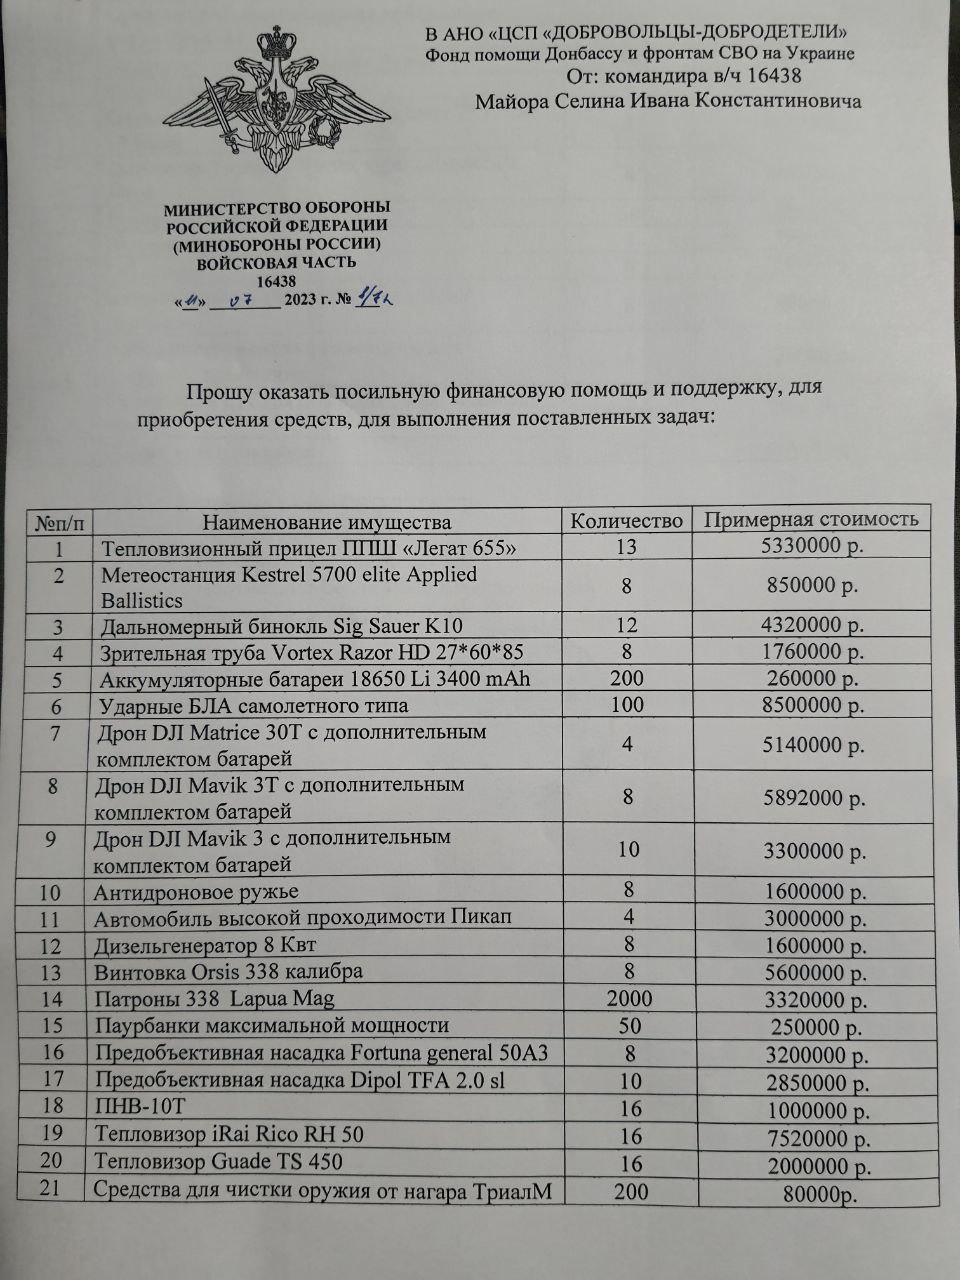 На фото список нужных вещей солдатам на передовой линии войны на Донбассе утверждённый командованием воинской части. Стр 1.